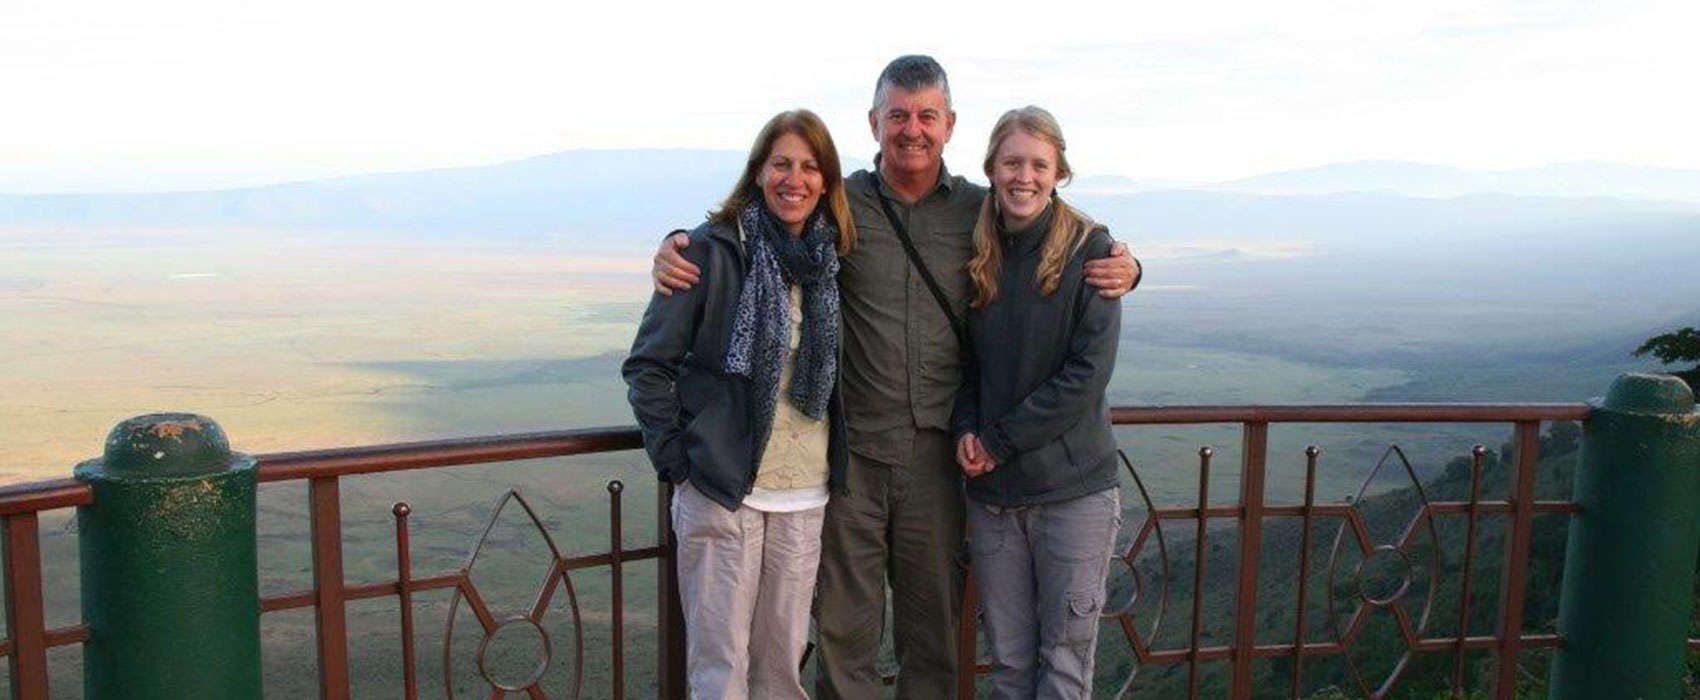 Tanzania family Safari holiday